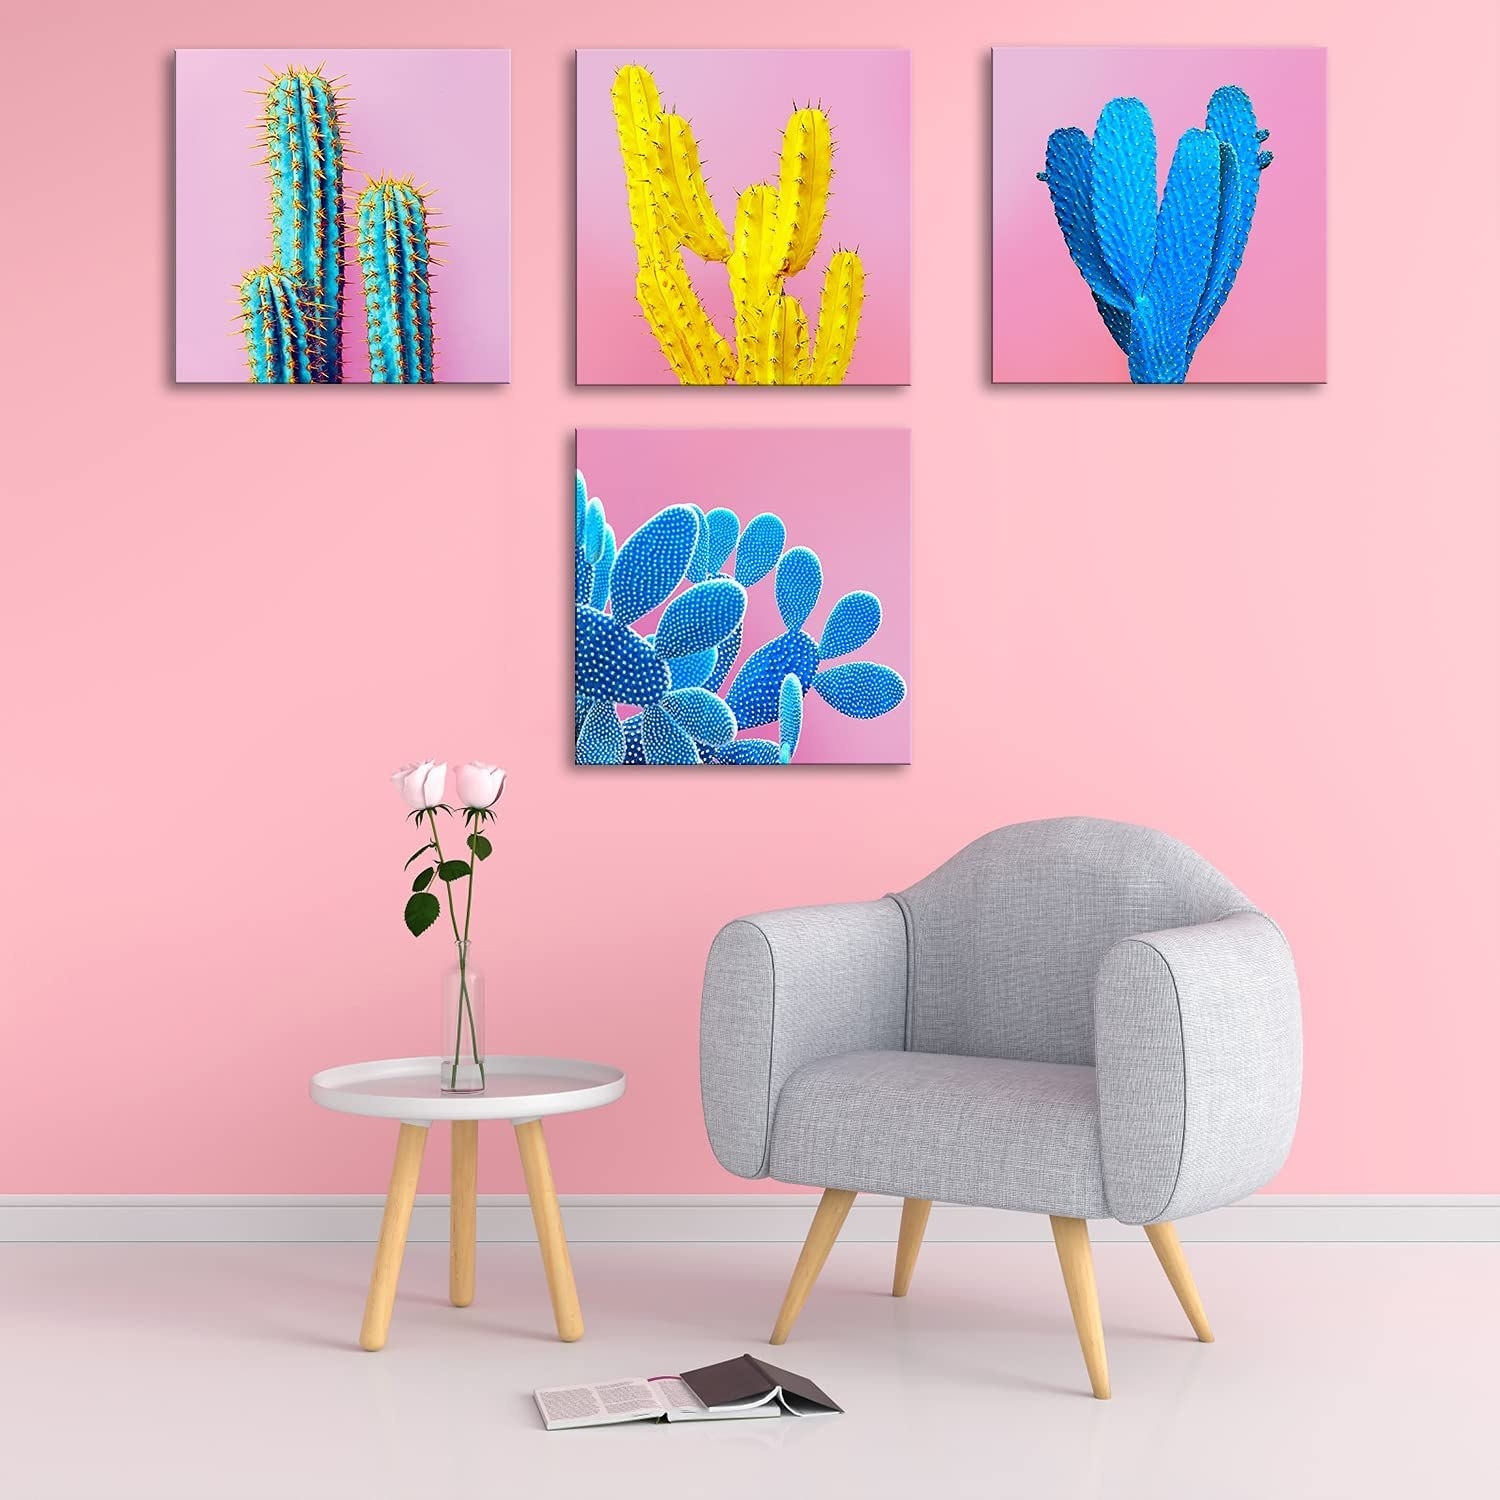 cuatro cuadros con fondo rosa e imágenes de cactus